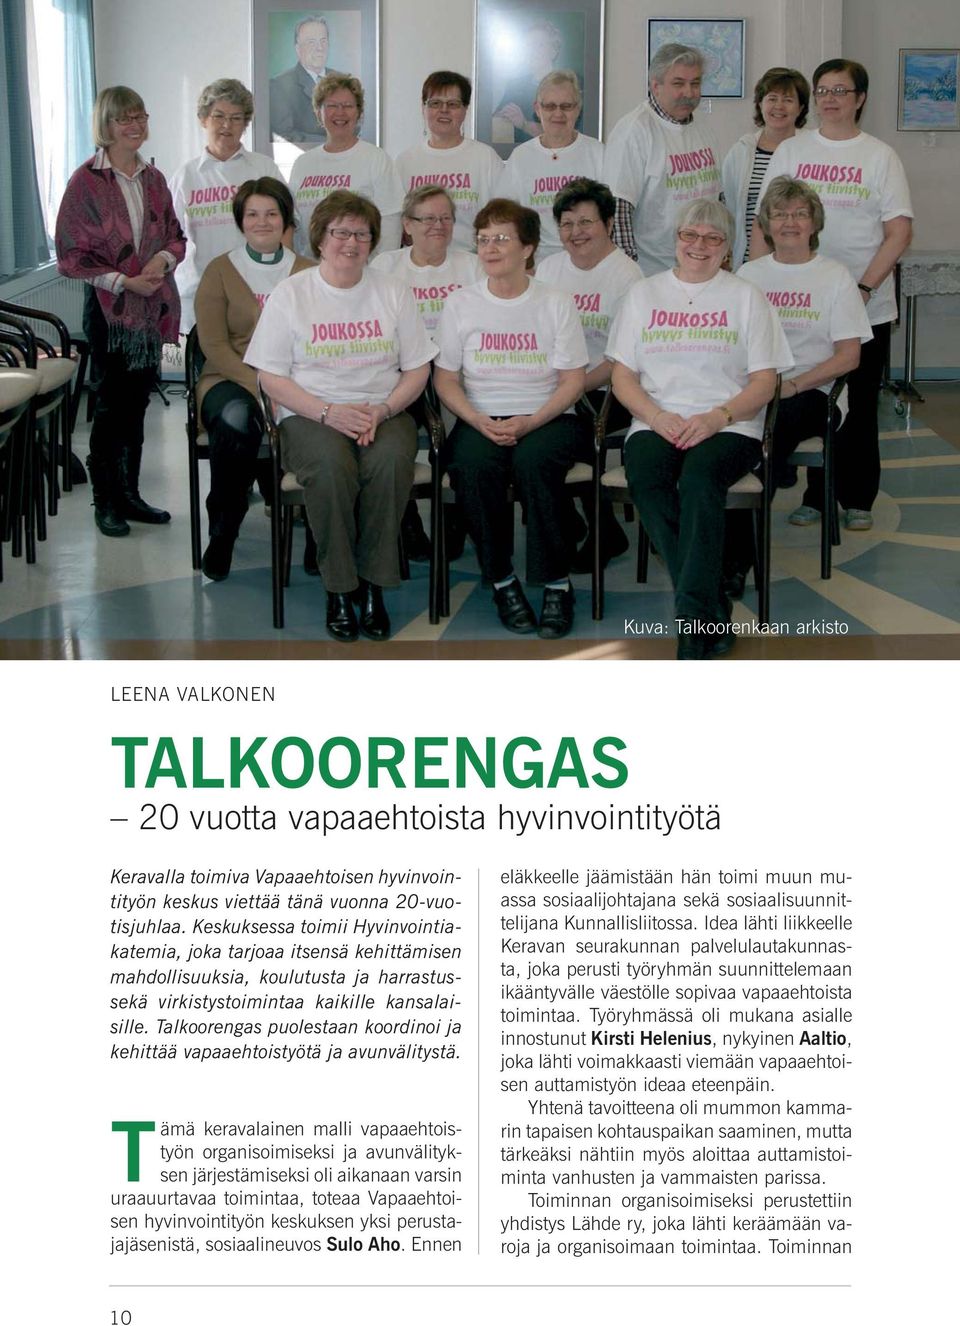 Talkoorengas puolestaan koordinoi ja kehittää vapaaehtoistyötä ja avunvälitystä.